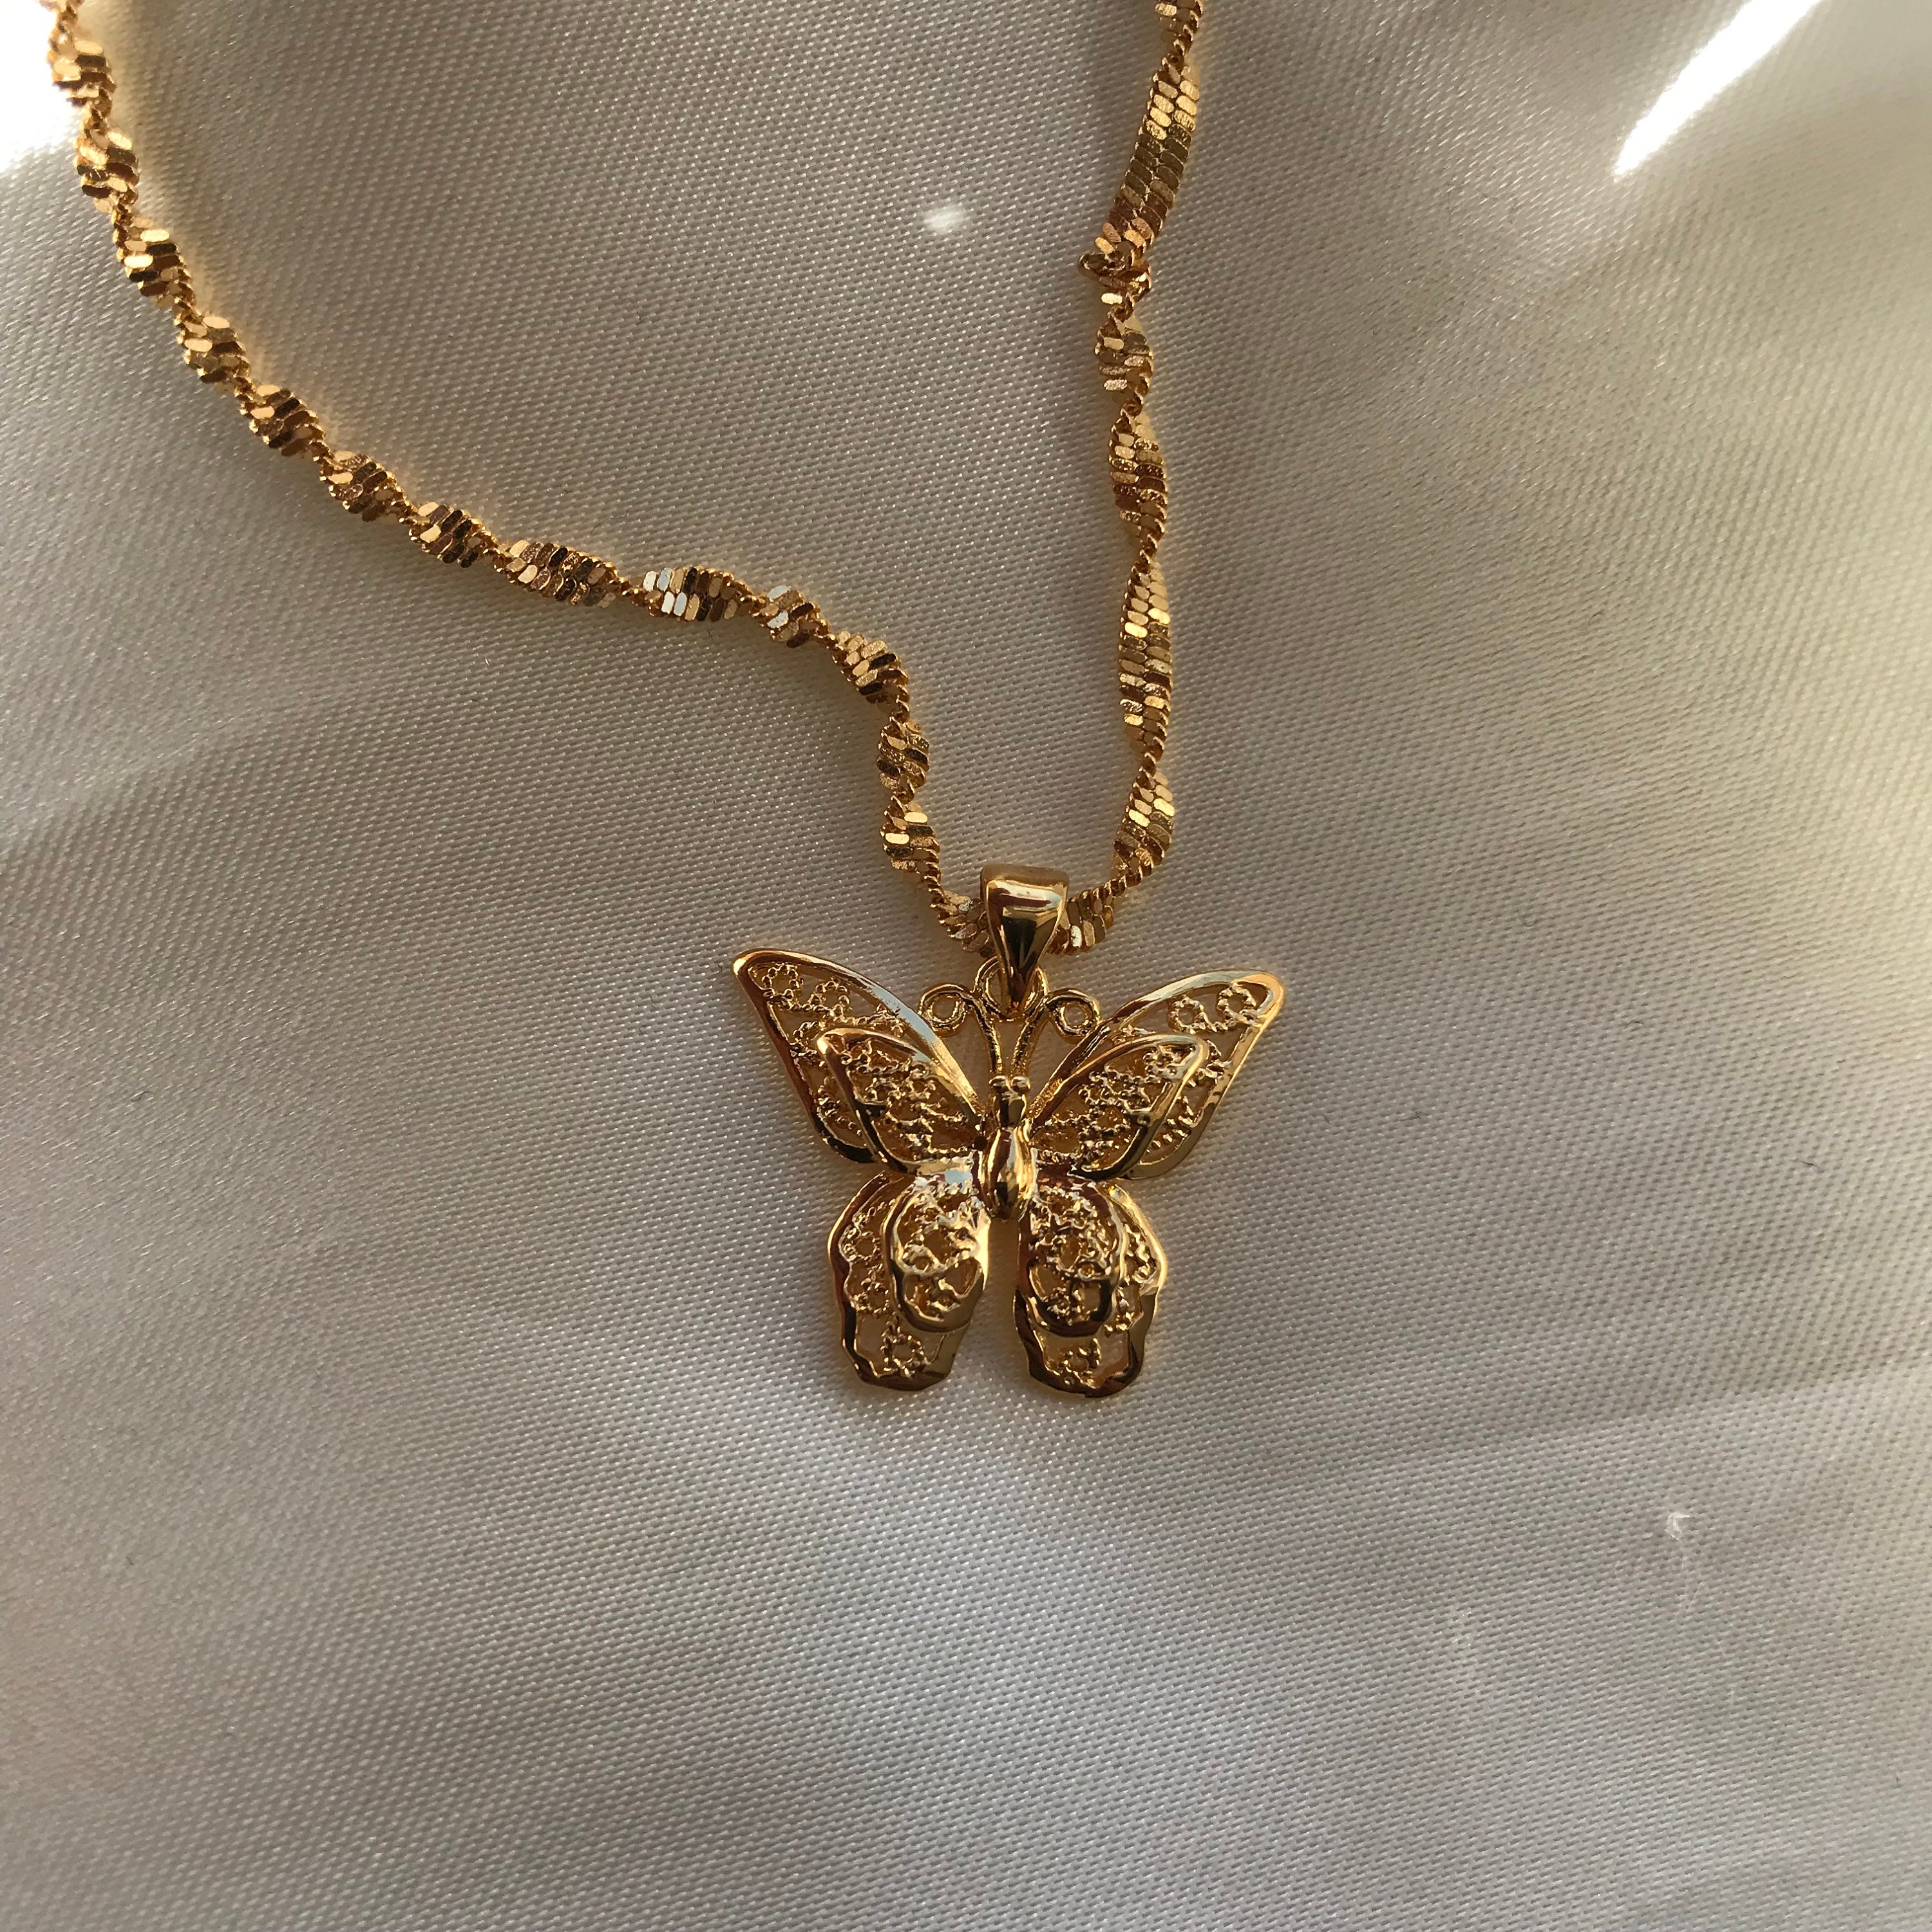 Butterfly Necklace - Etsy UK